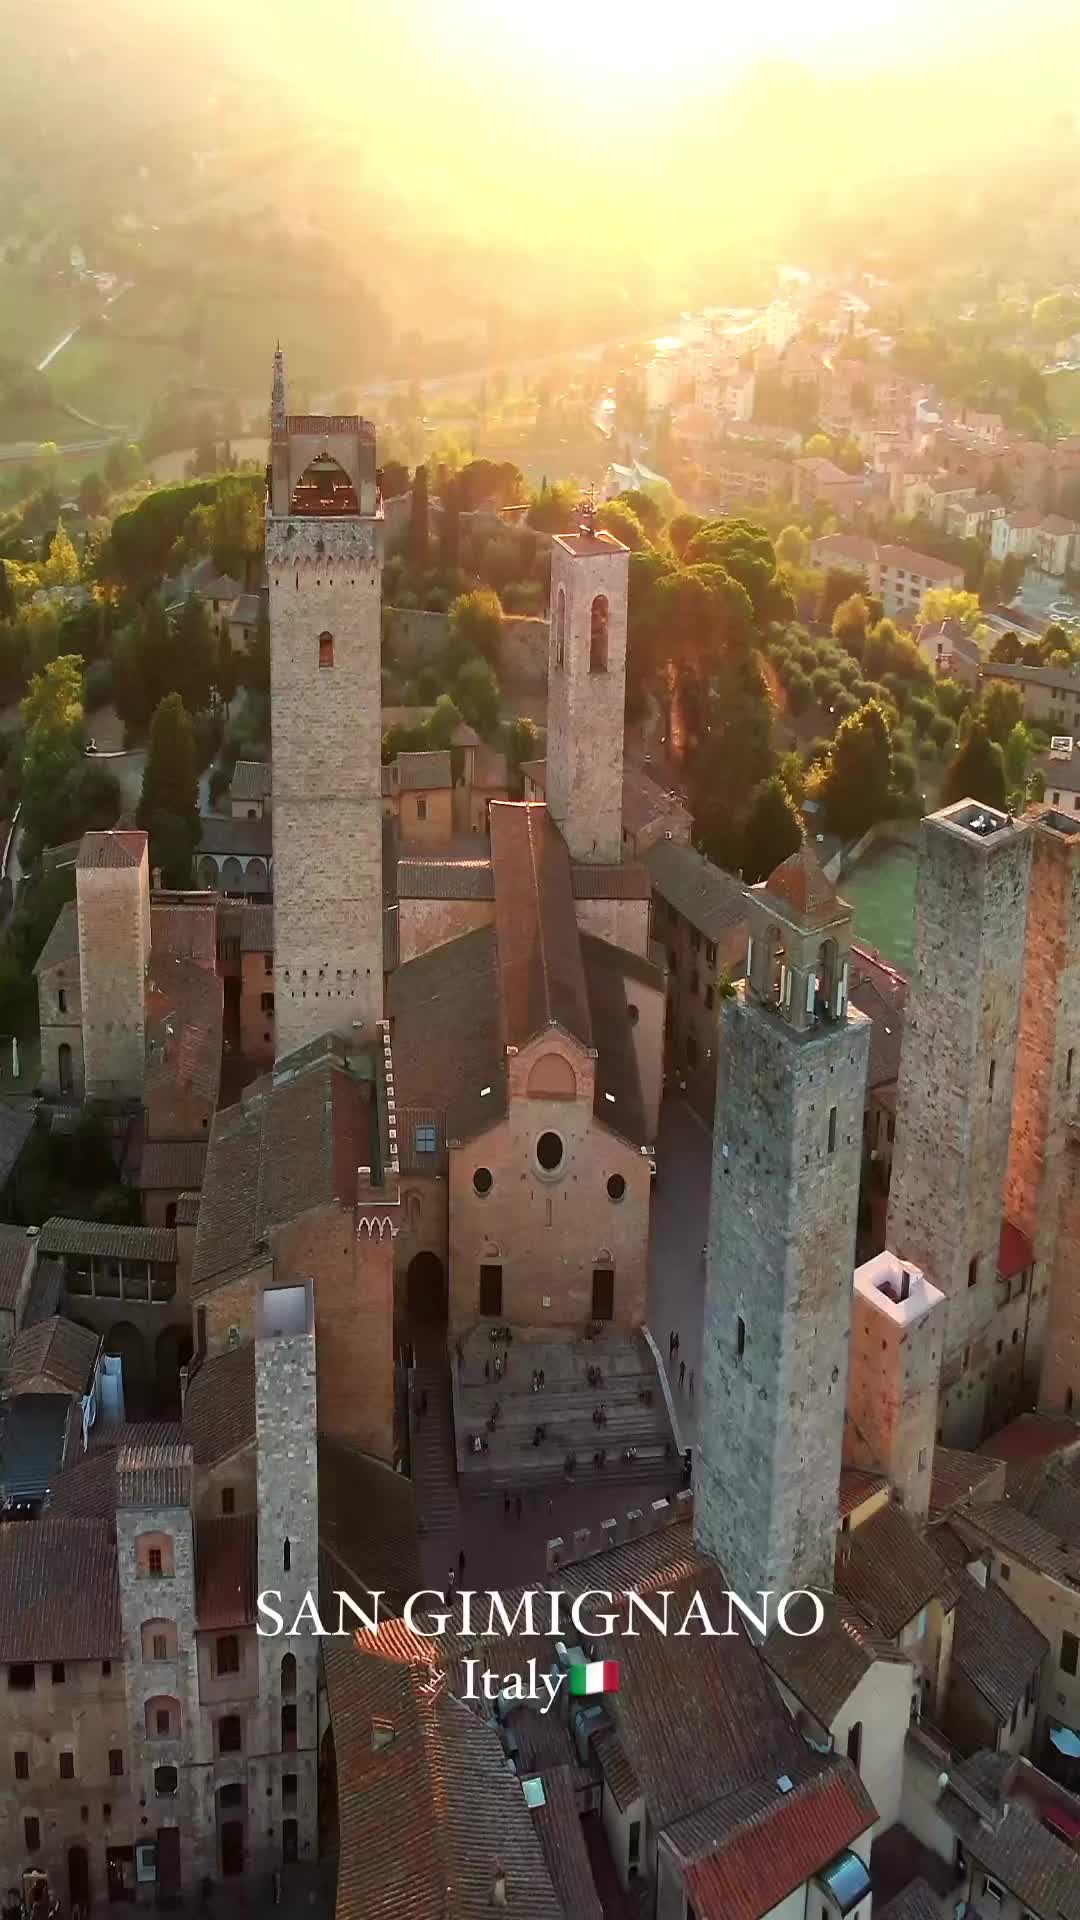 San Gimignano Towers: A Historic Italian Gem